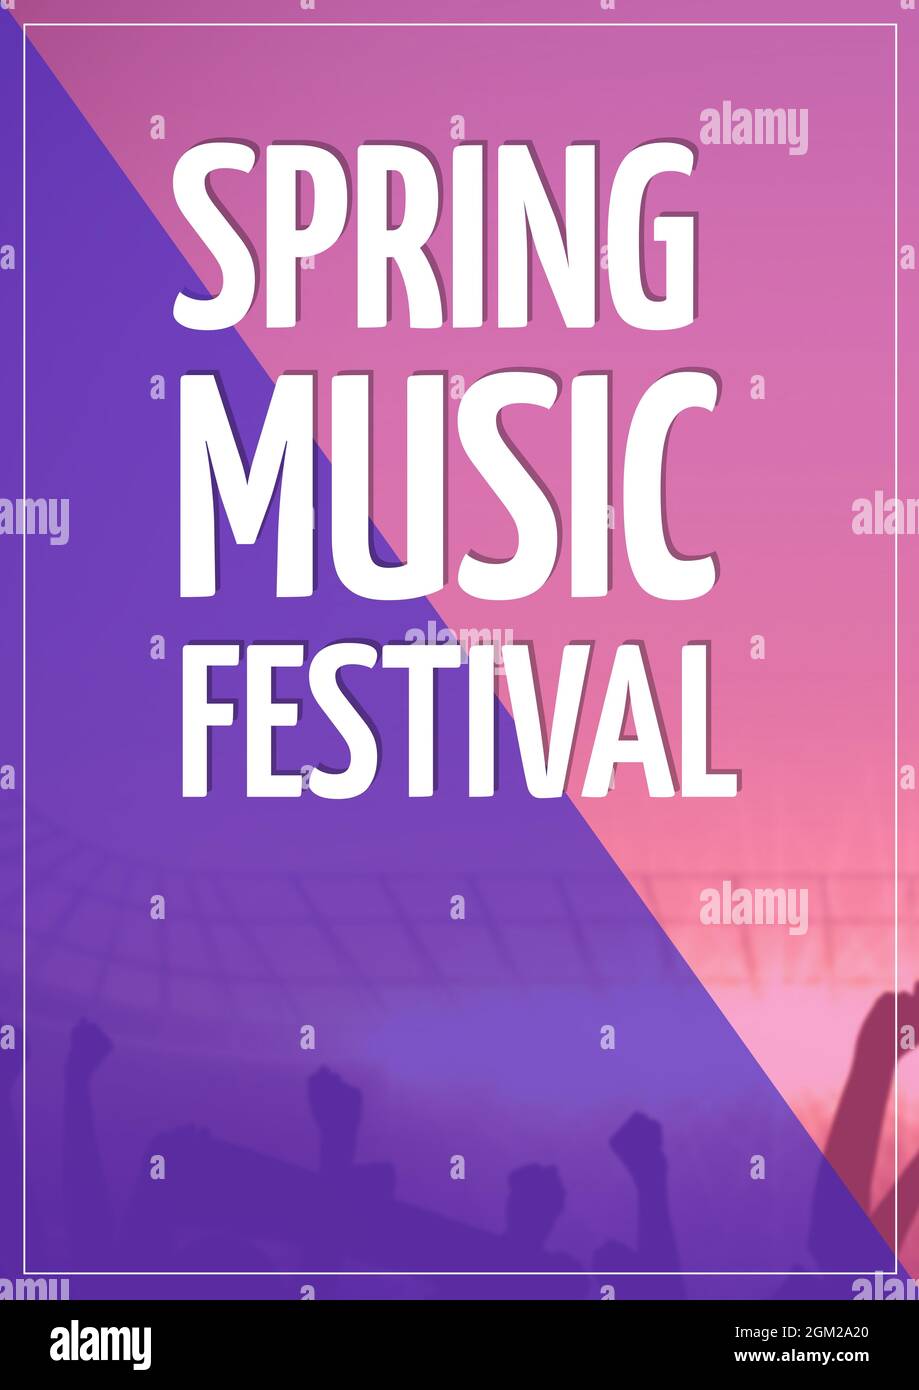 Spring Music Festival texte contre fond rose et bleu double fait Banque D'Images